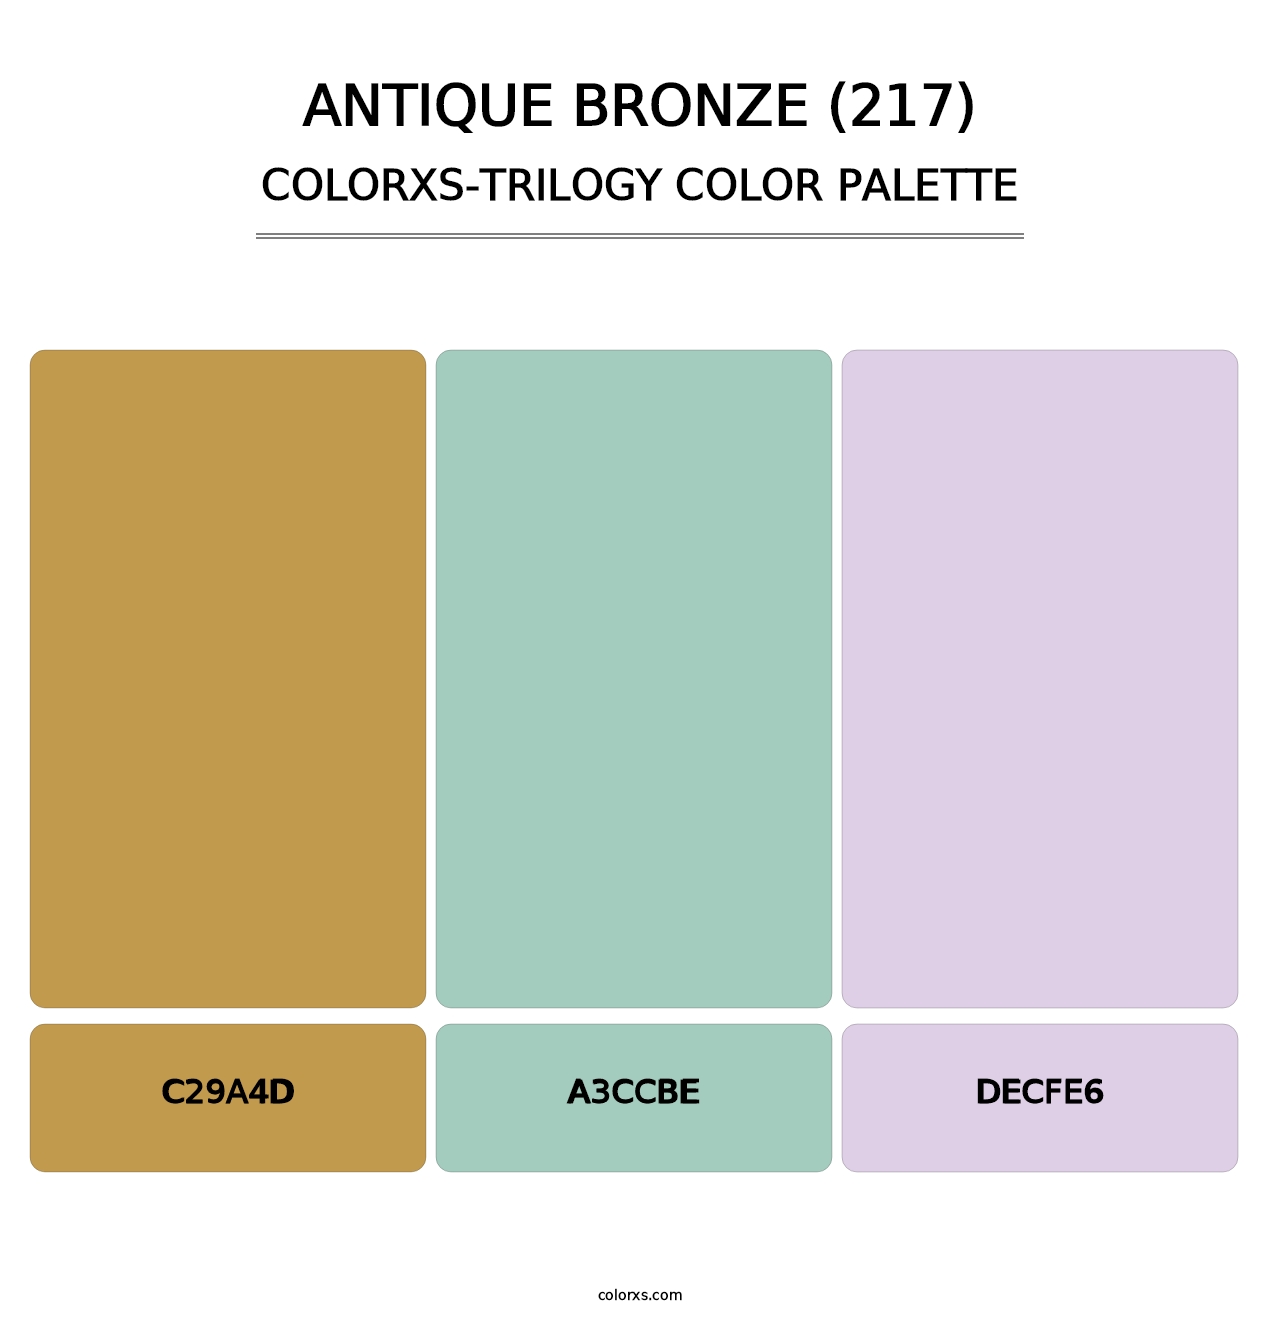 Antique Bronze (217) - Colorxs Trilogy Palette